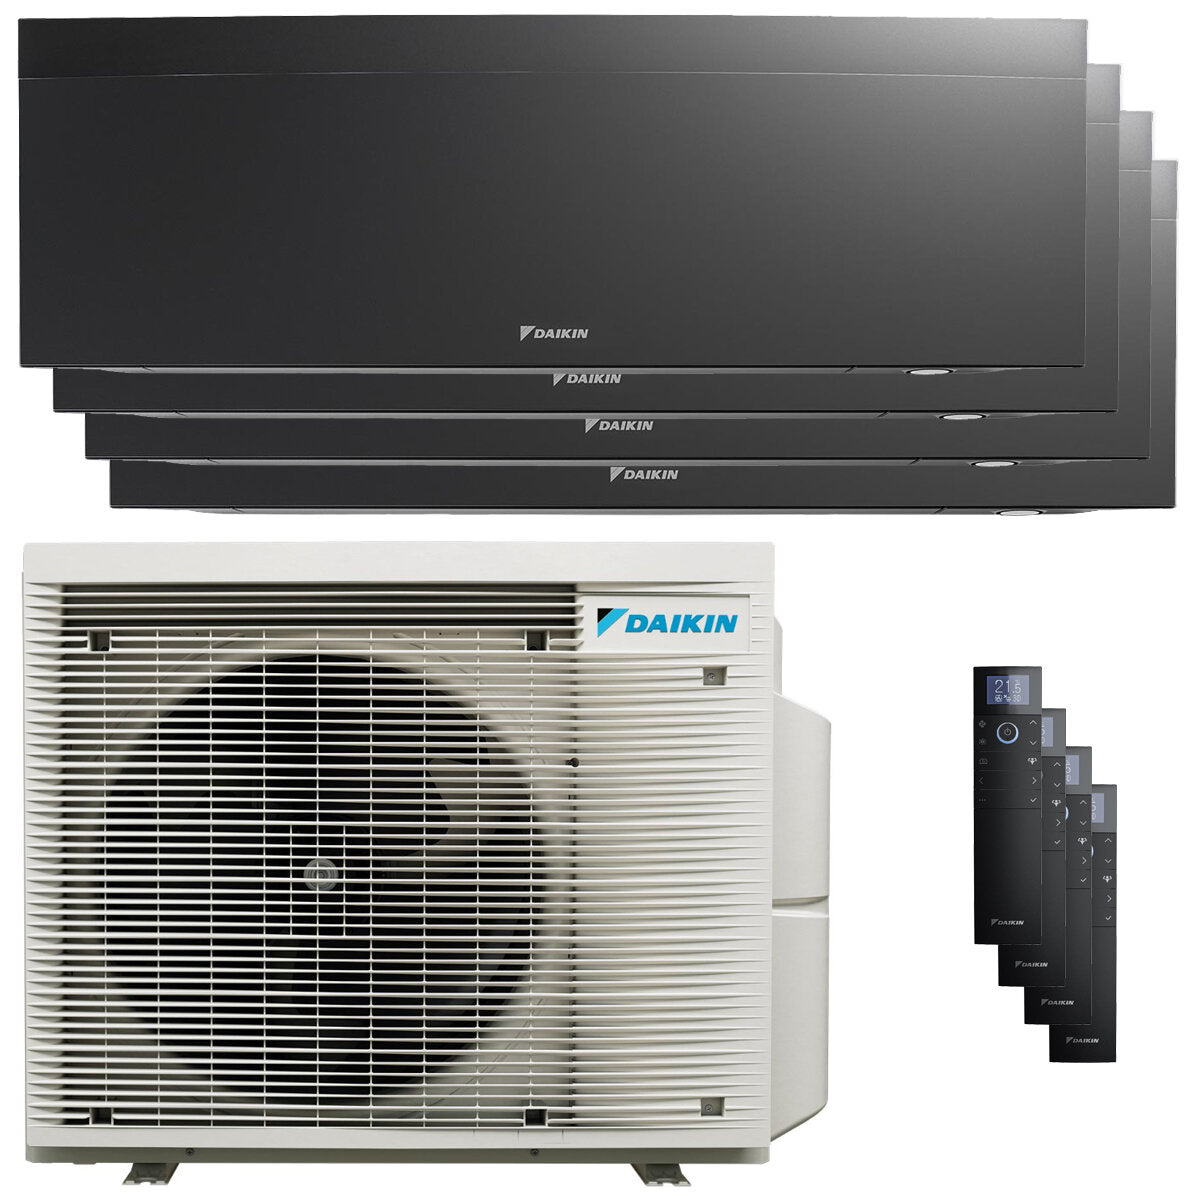 Daikin Emura air conditioner 3 split panels 7000 + 9000 + 9000 + 18000 BTU inverter A++ wifi outdoor unit 7.4 kW Black